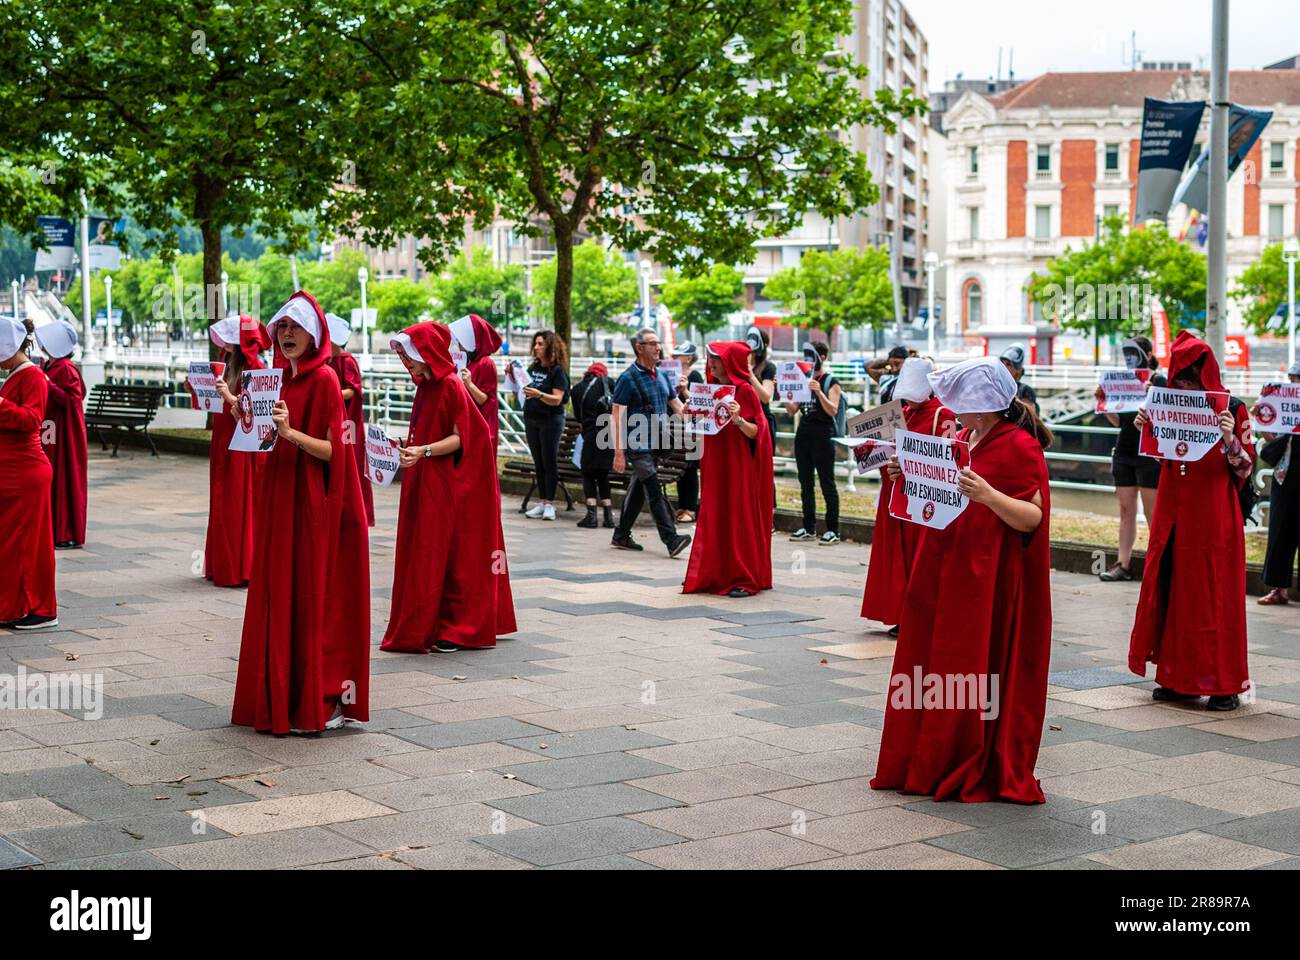 Les activistes féministes radicaux vêtus d'un costume de la série "The Handmaid's Tale" participent à une démonstration d'ademonstration contre les mères porteuses. Banque D'Images